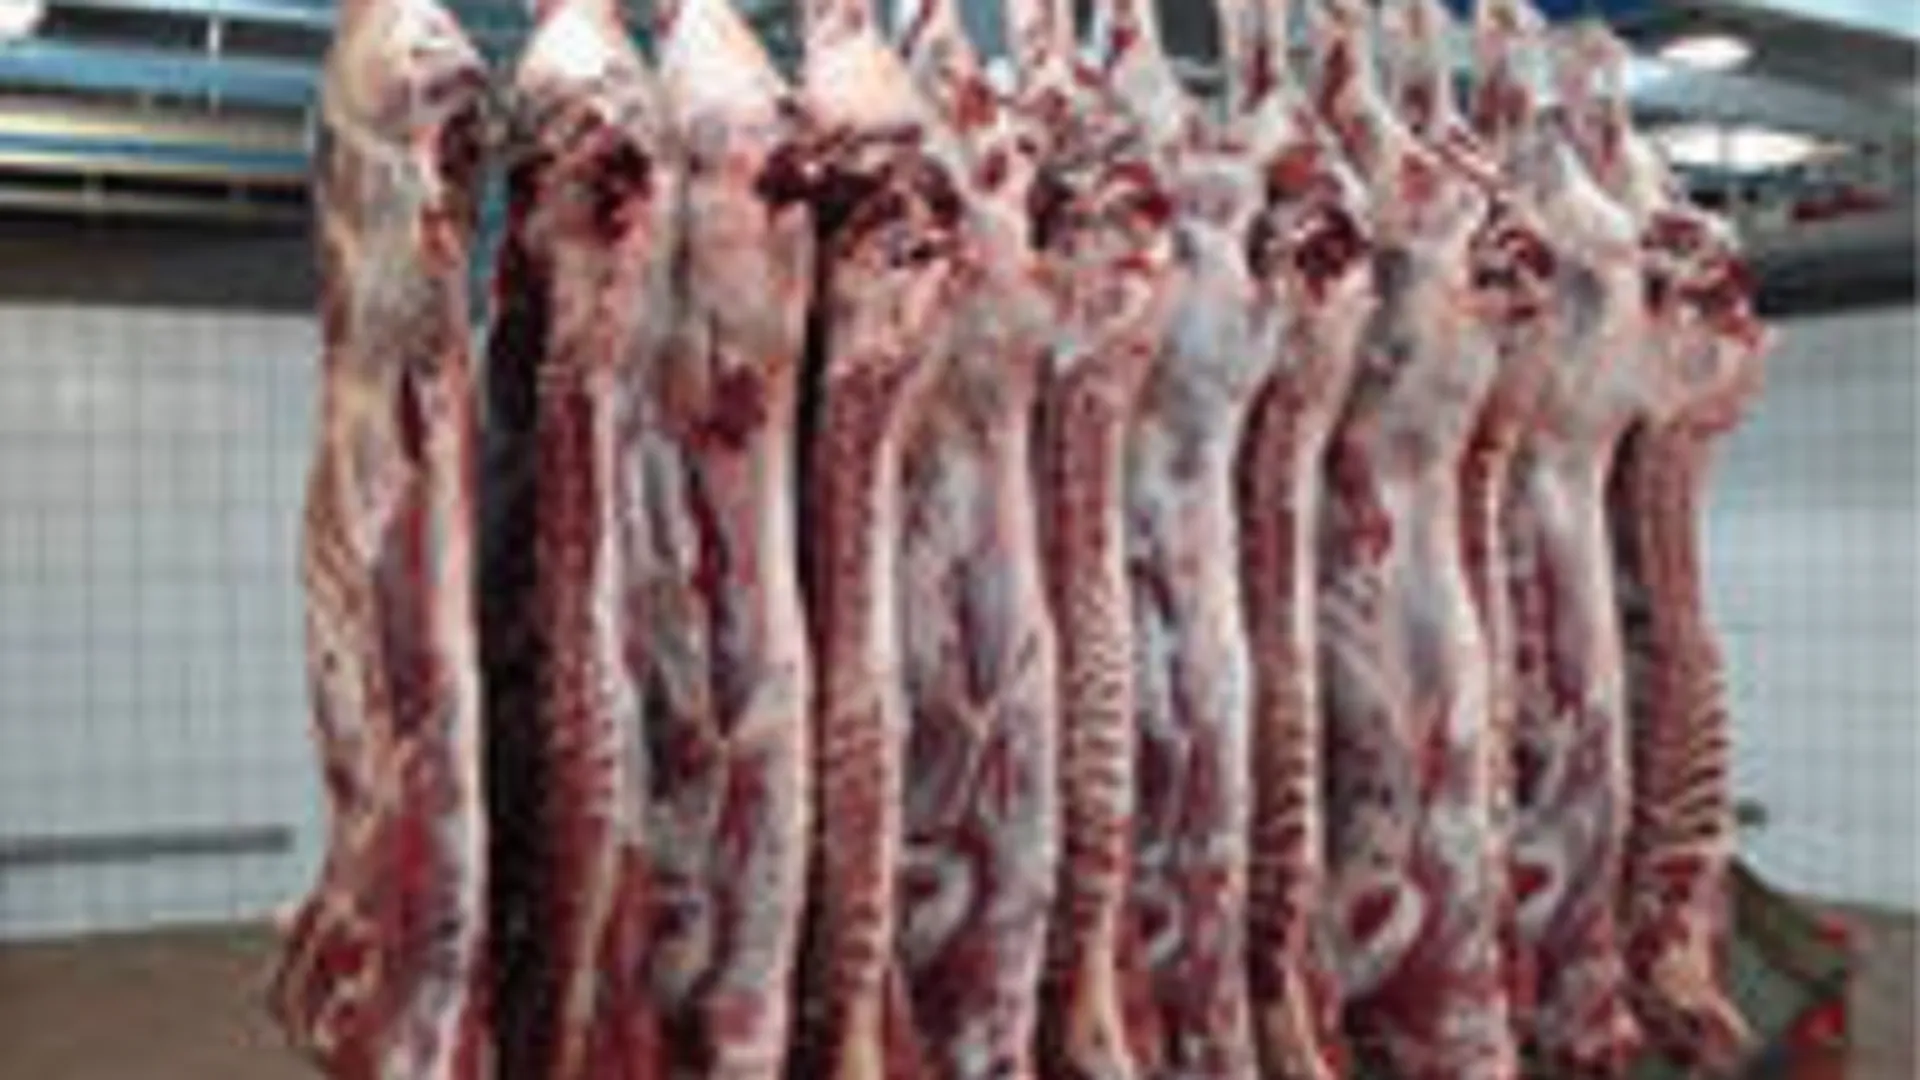 Россельхознадзор выявил нарушения в хранении мяса в магазине «Перекресток» в Коломне